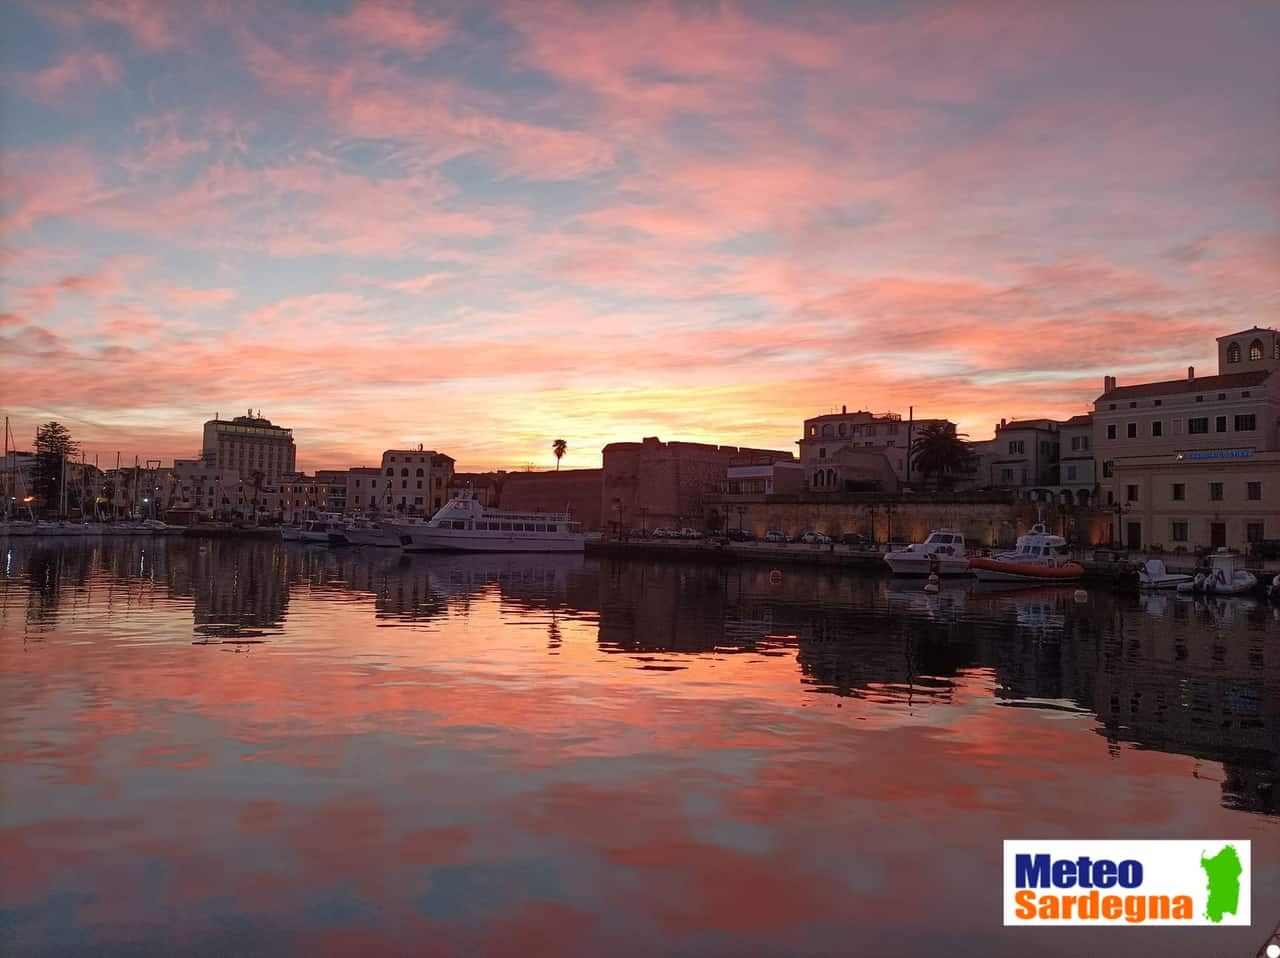 2022 02 19 11.37.34 - Meteo Sardegna e Alghero. Video e foto del nuovo giorno